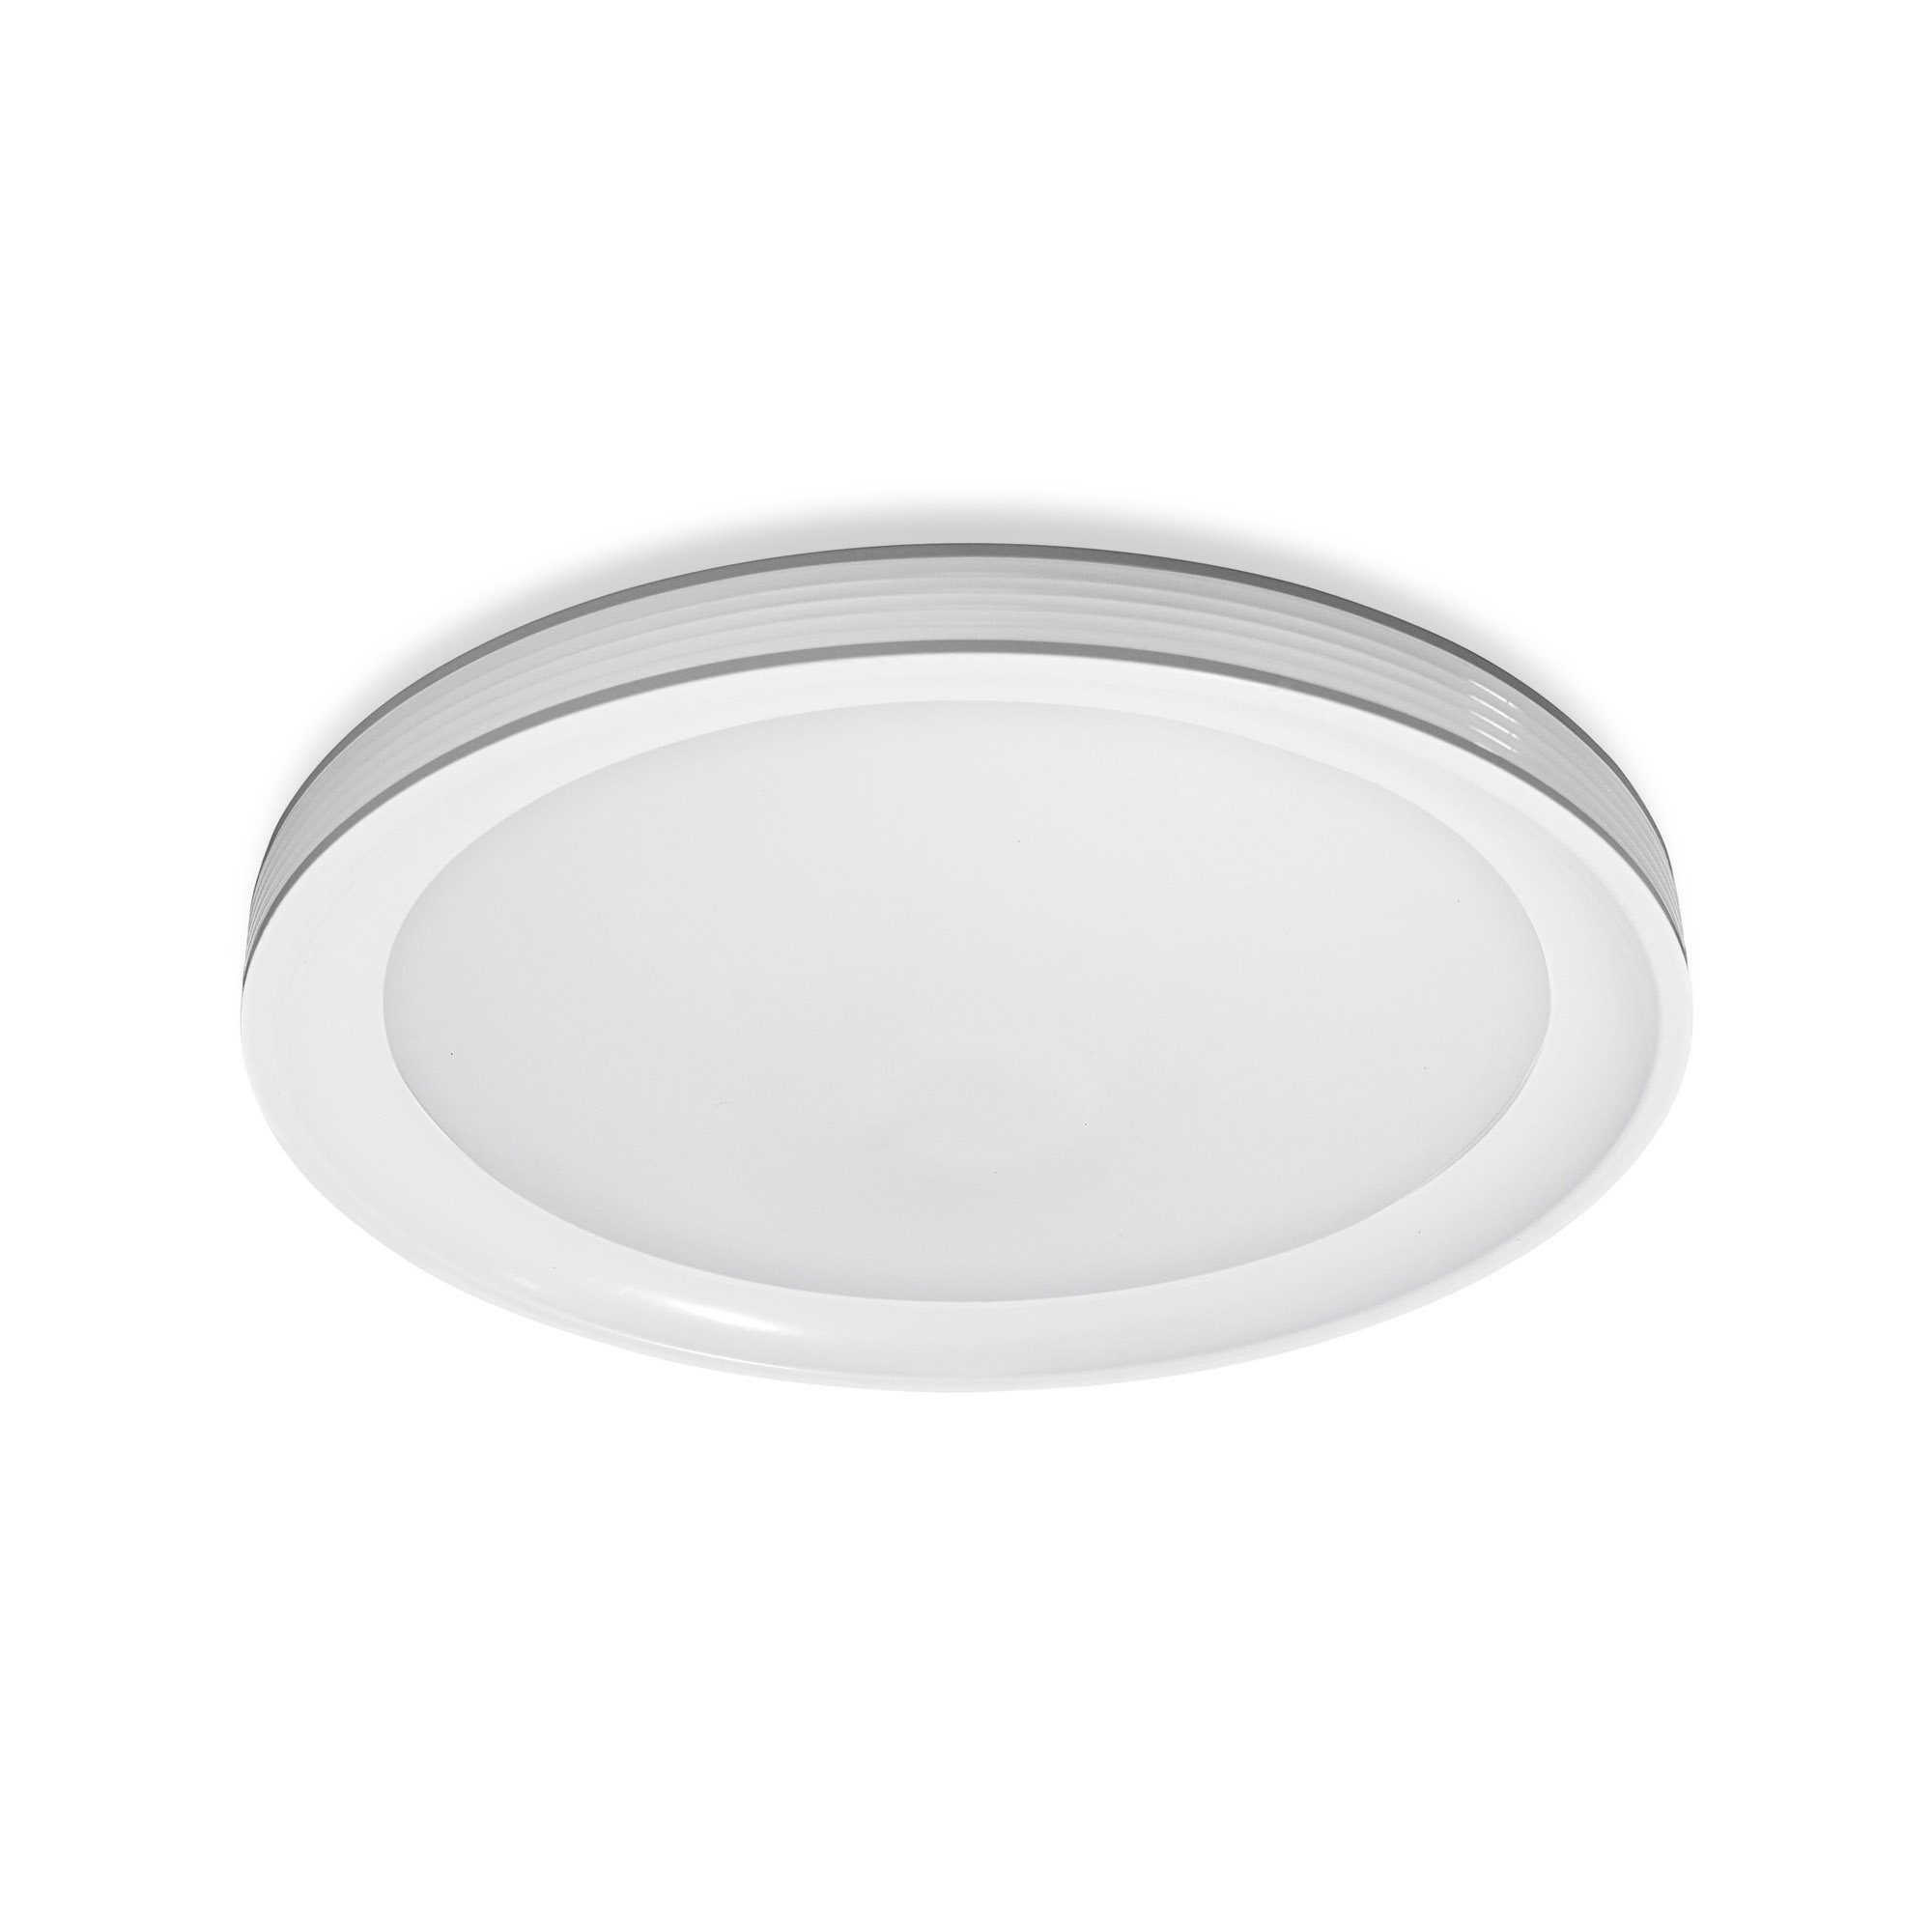 LEDVANCE SMART+ WiFi Tunable White LED Ceiling Light ORBIS Frame 500mm white 3300lm